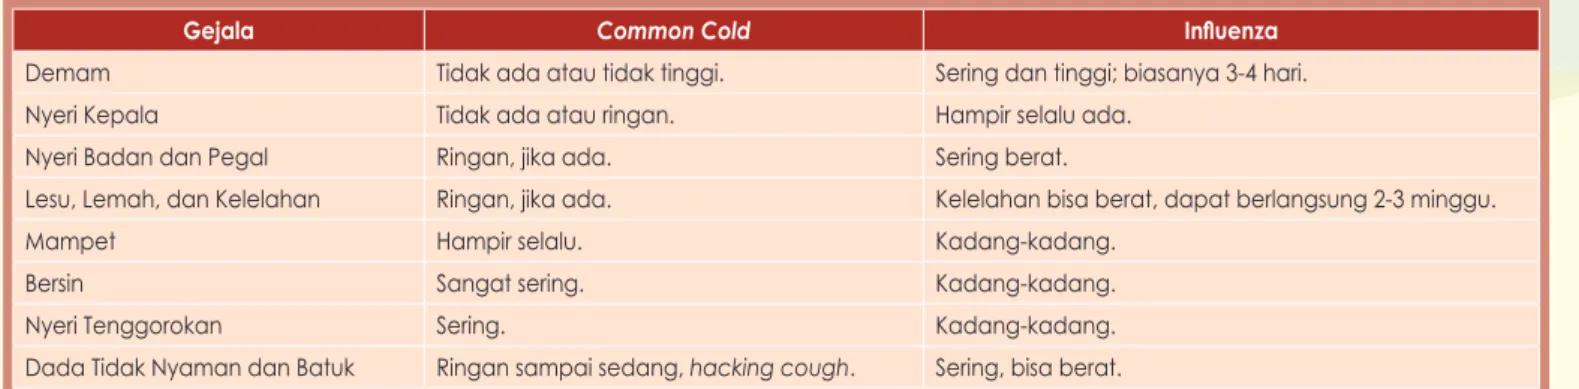 Tabel 1: Perbandingan Common Cold dan Influenza